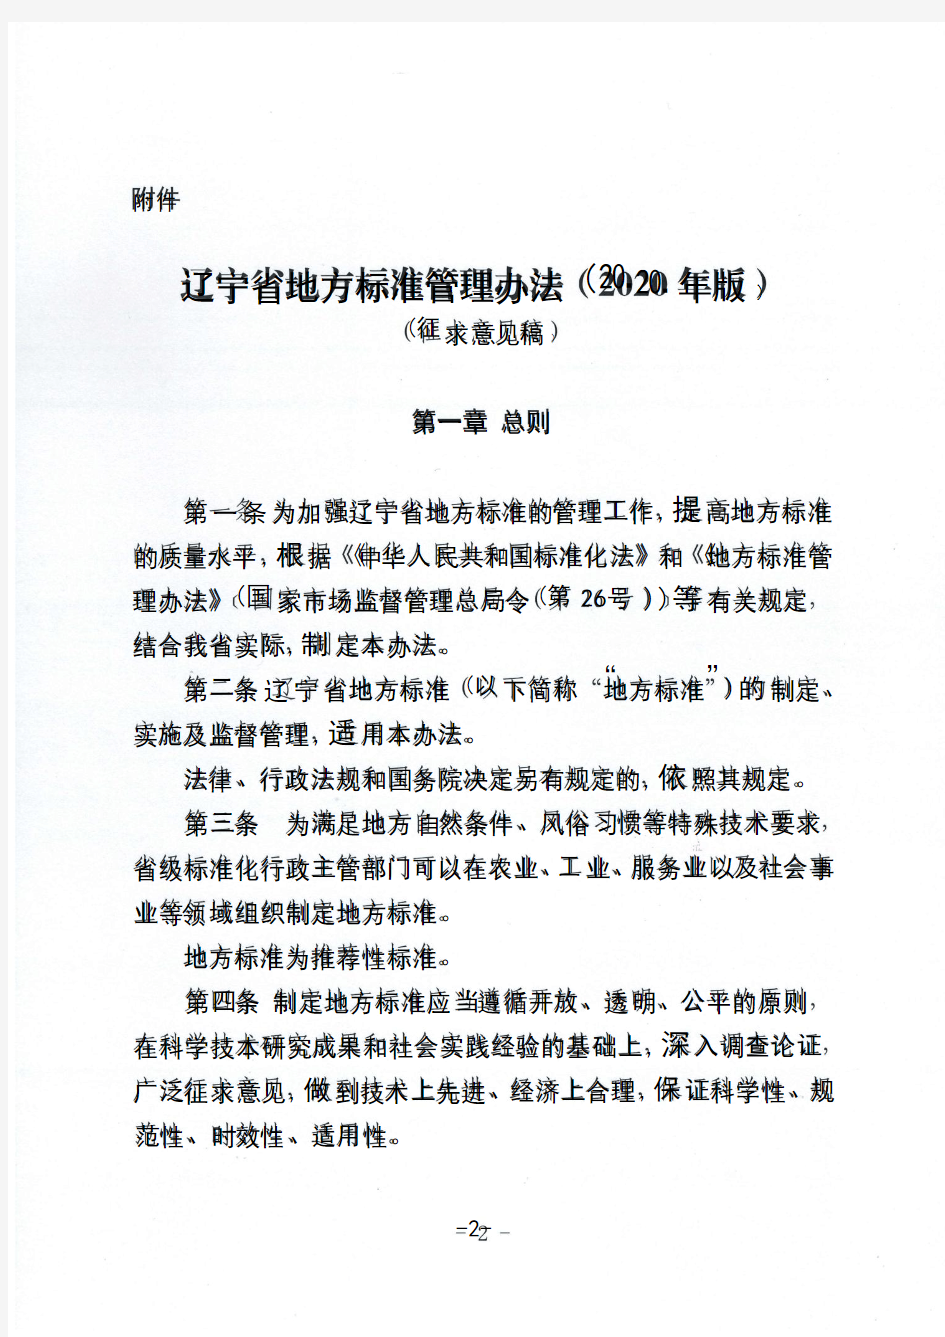 辽宁省地方标准管理办法(2020年版)